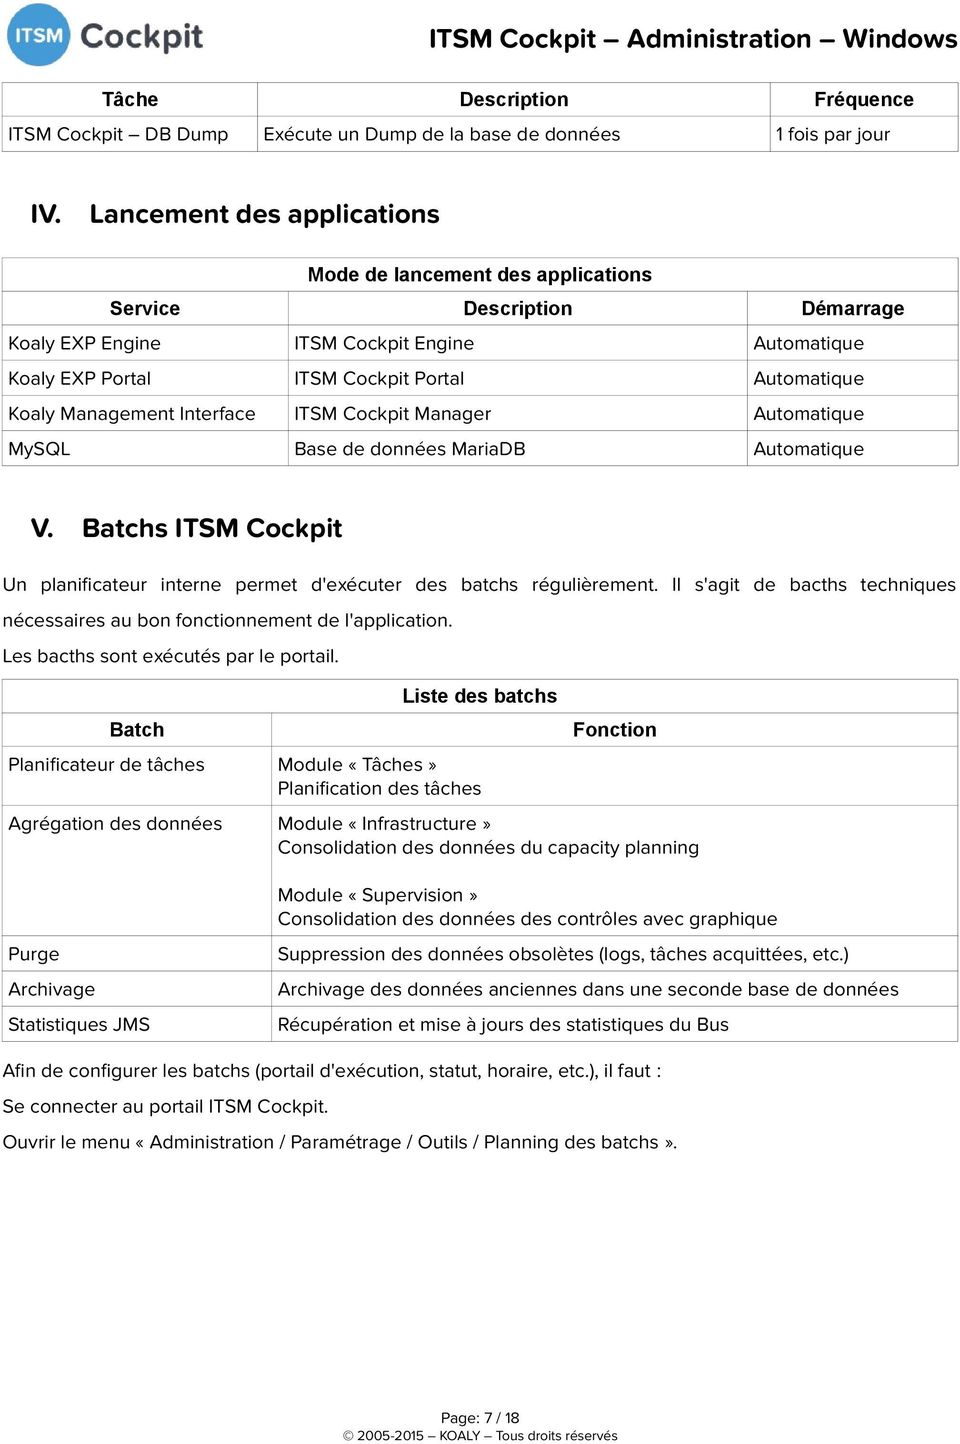 Management Interface ITSM Cockpit Manager Automatique MySQL Base de données MariaDB Automatique V. Batchs ITSM Cockpit Un planifcateur interne permet d'exécuter des batchs régulièrement.